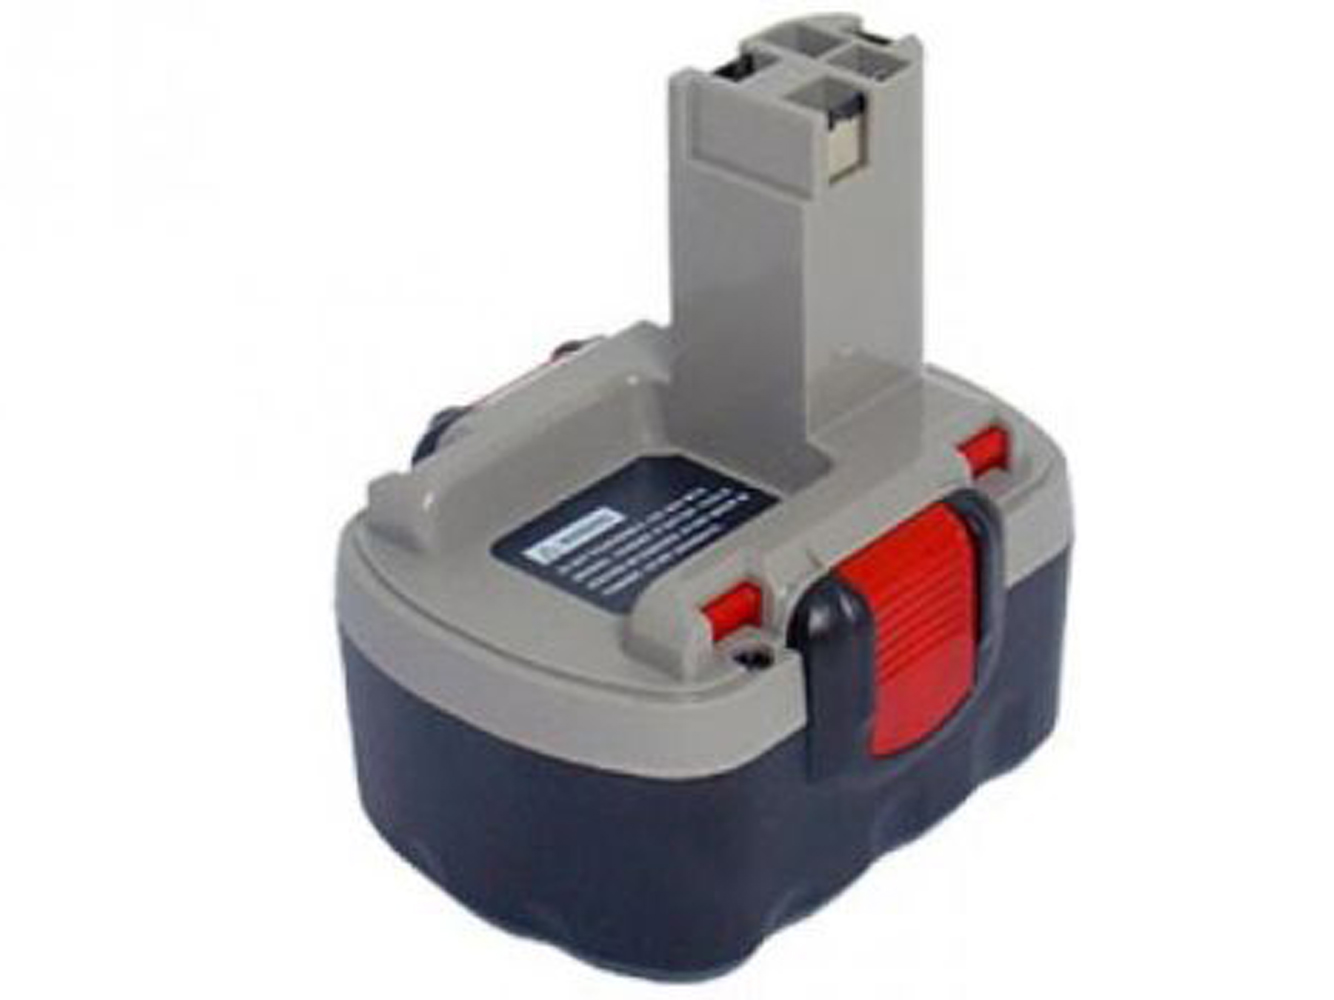 Bosch 2 607 335 264, 2 607 335 276 Power Tool Battery For Bosch 13614, Bosch 13614-2g replacement